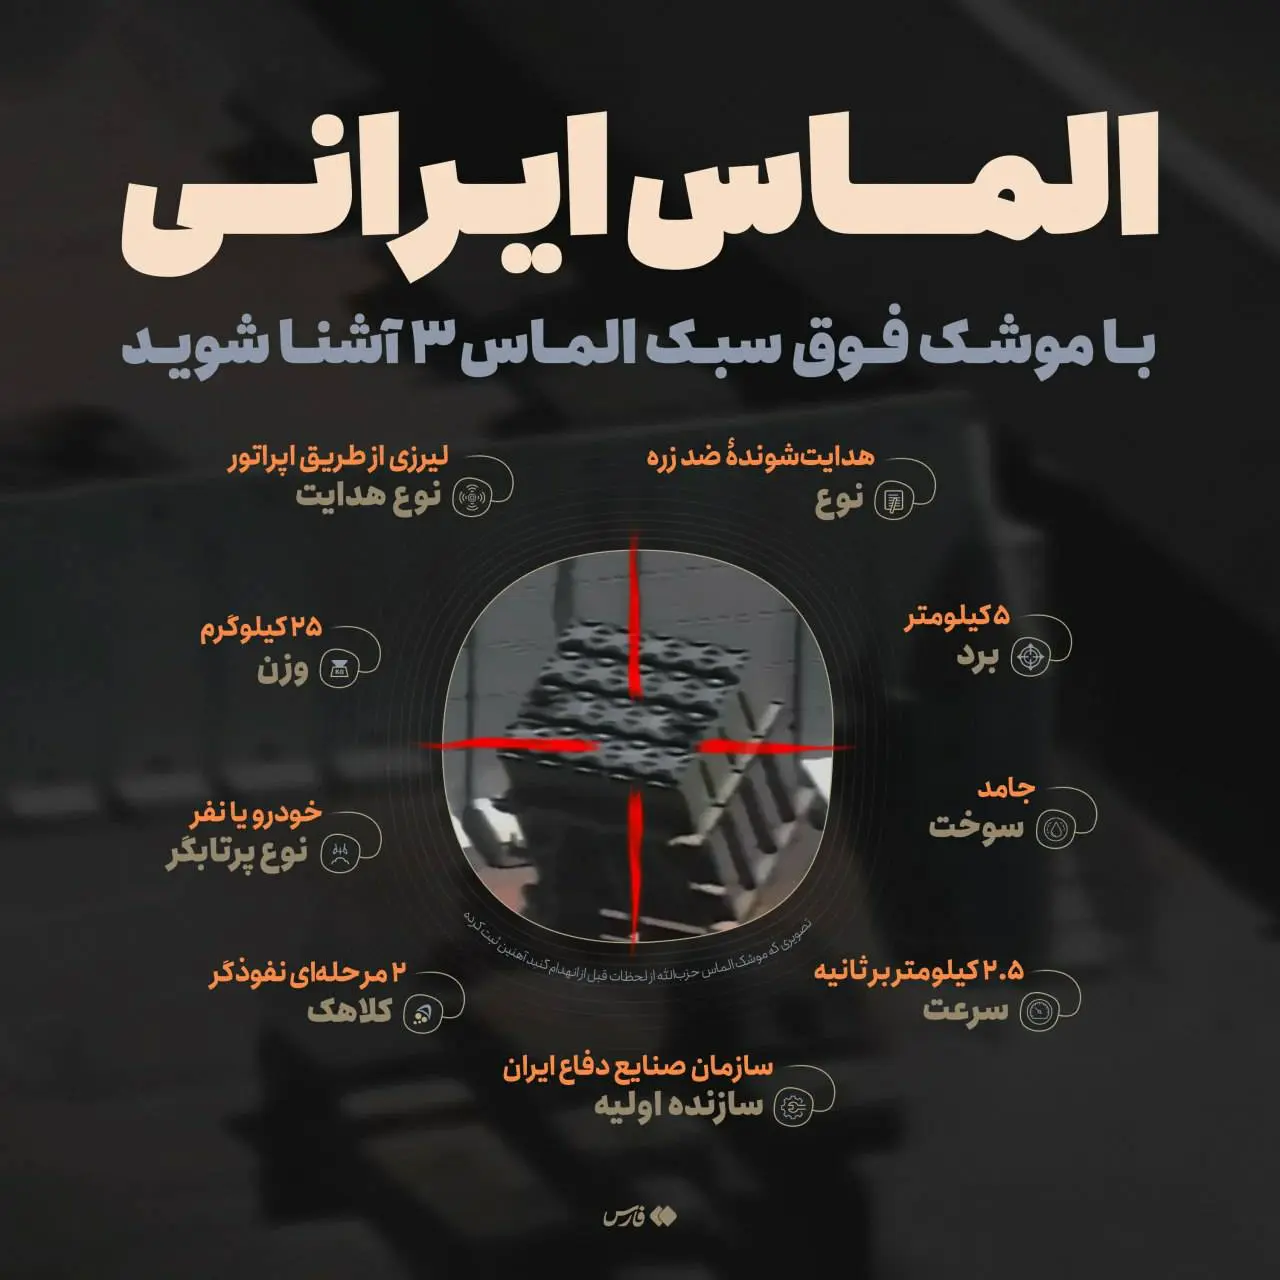 لحظه انهدام گنبد آهنین با موشک الماس حزب الله+ فیلم/ ویژگی های منحصر به فرد موشک الماس